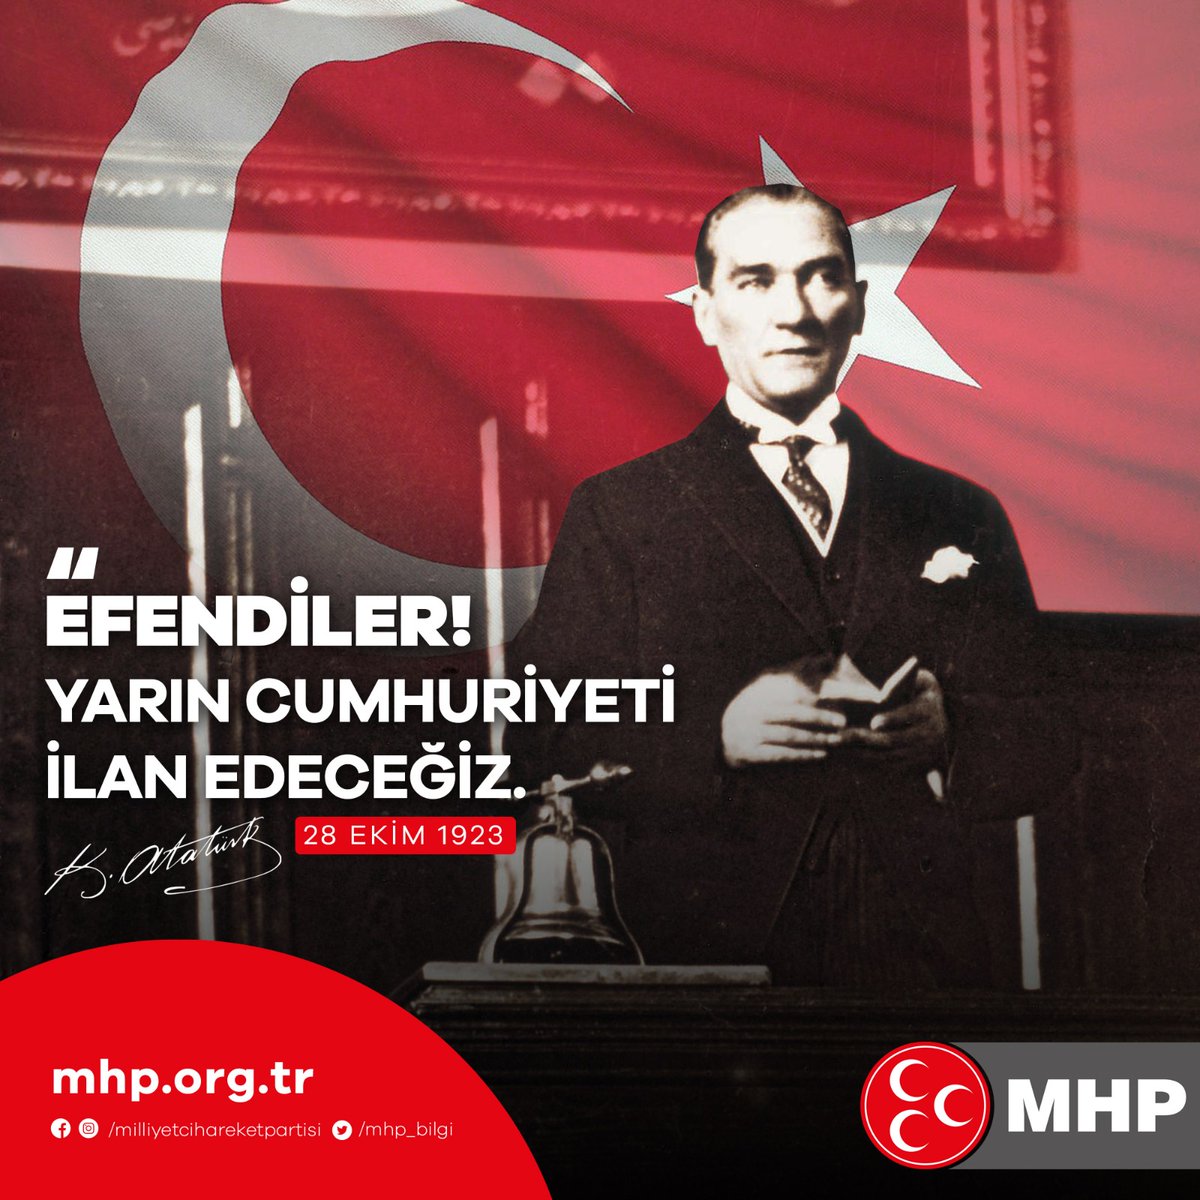 Efendiler! Yarın Cumhuriyeti İlan Edeceğiz. Gazi Mustafa Kemal ATATÜRK (28 Ekim 1923)